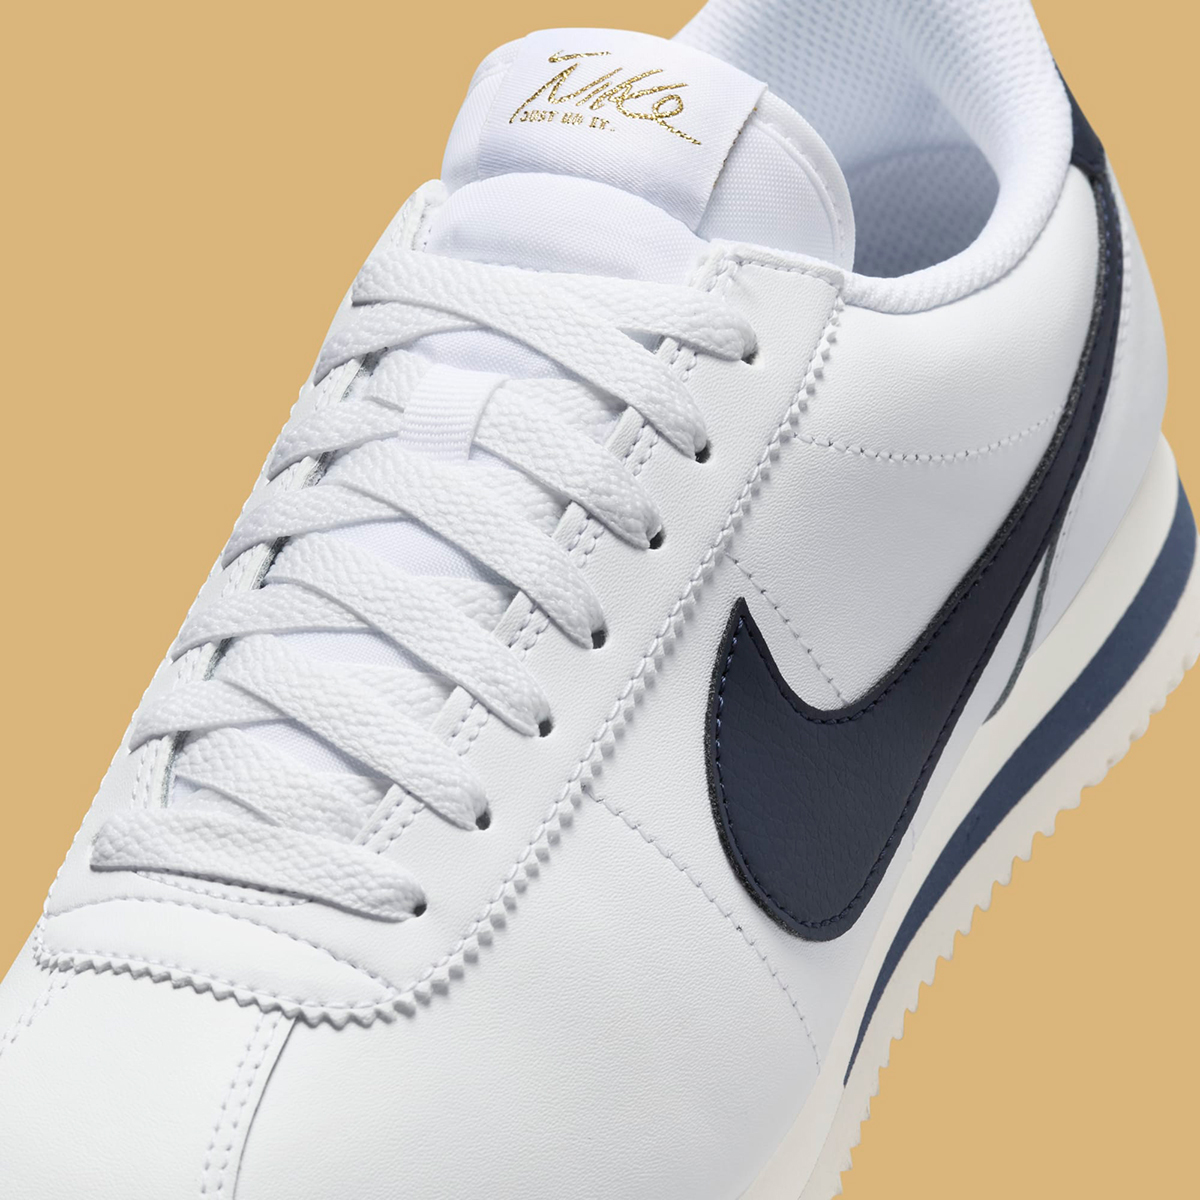 Nike Cortez White Navy Gold Olympics Hj9343 100 3